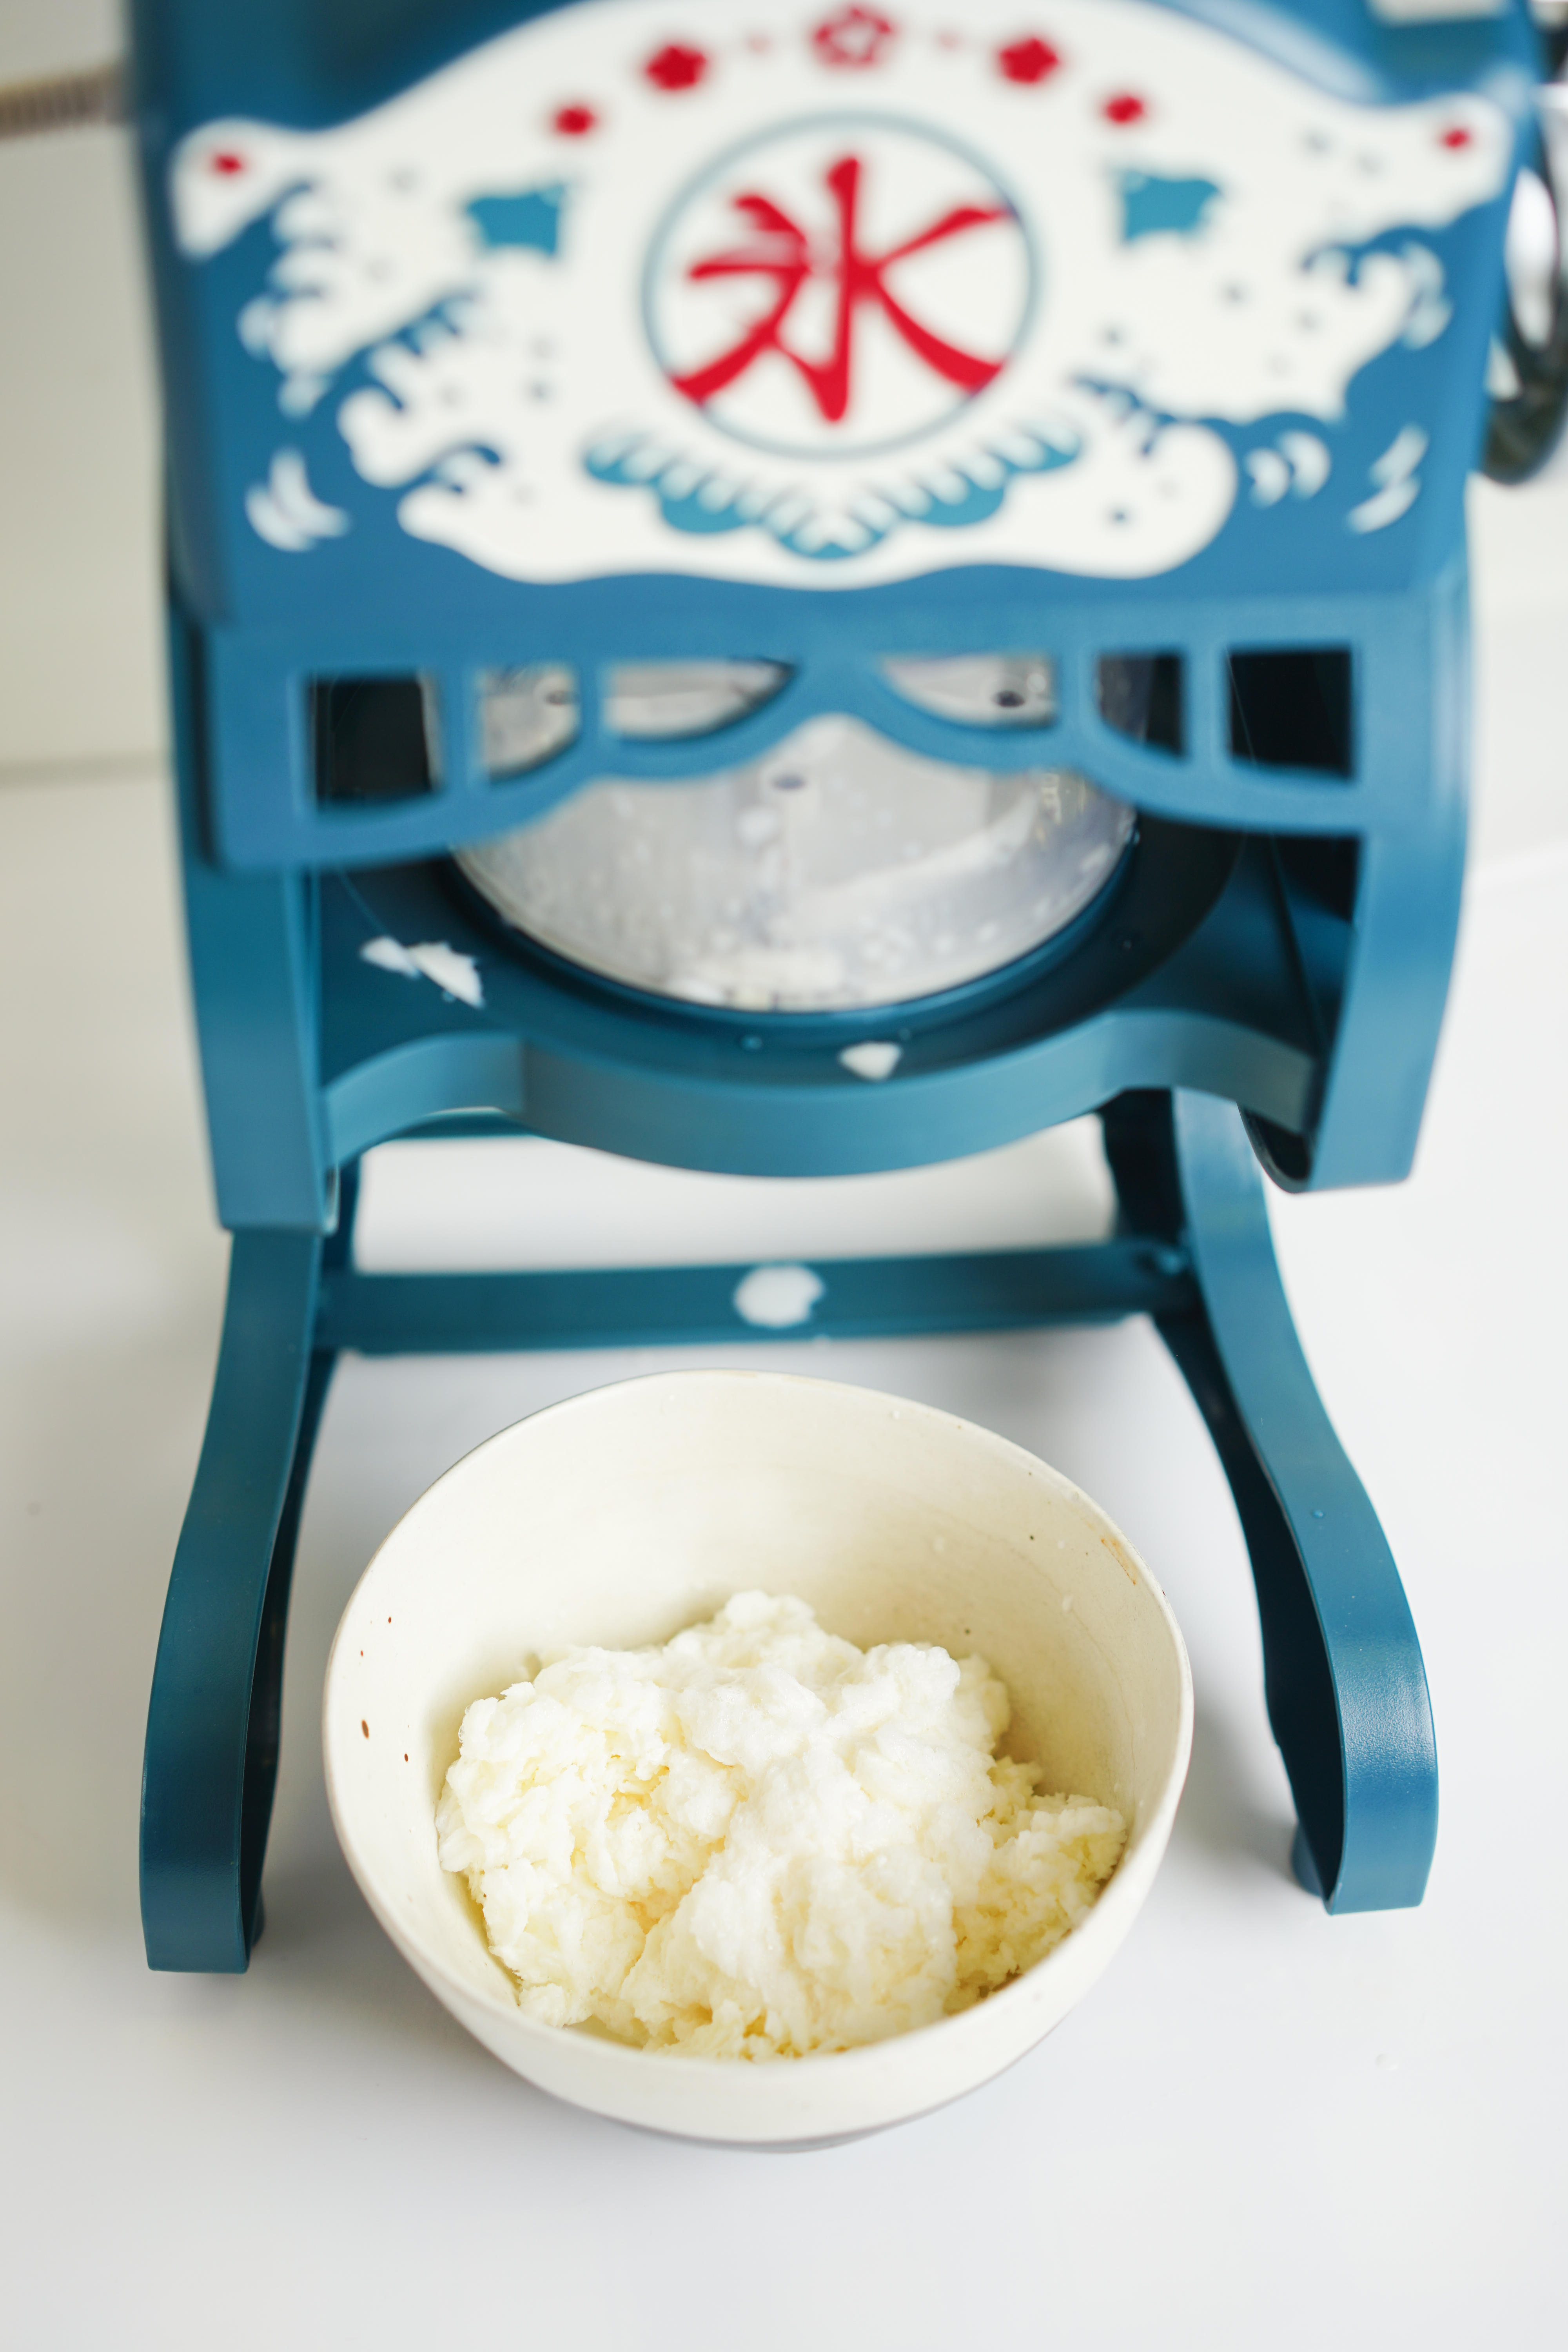 日本创造的「破壁机」太太太好用了！磨豆乳、榨果汁、做辅食打点机、冰沙机、摄生壶一